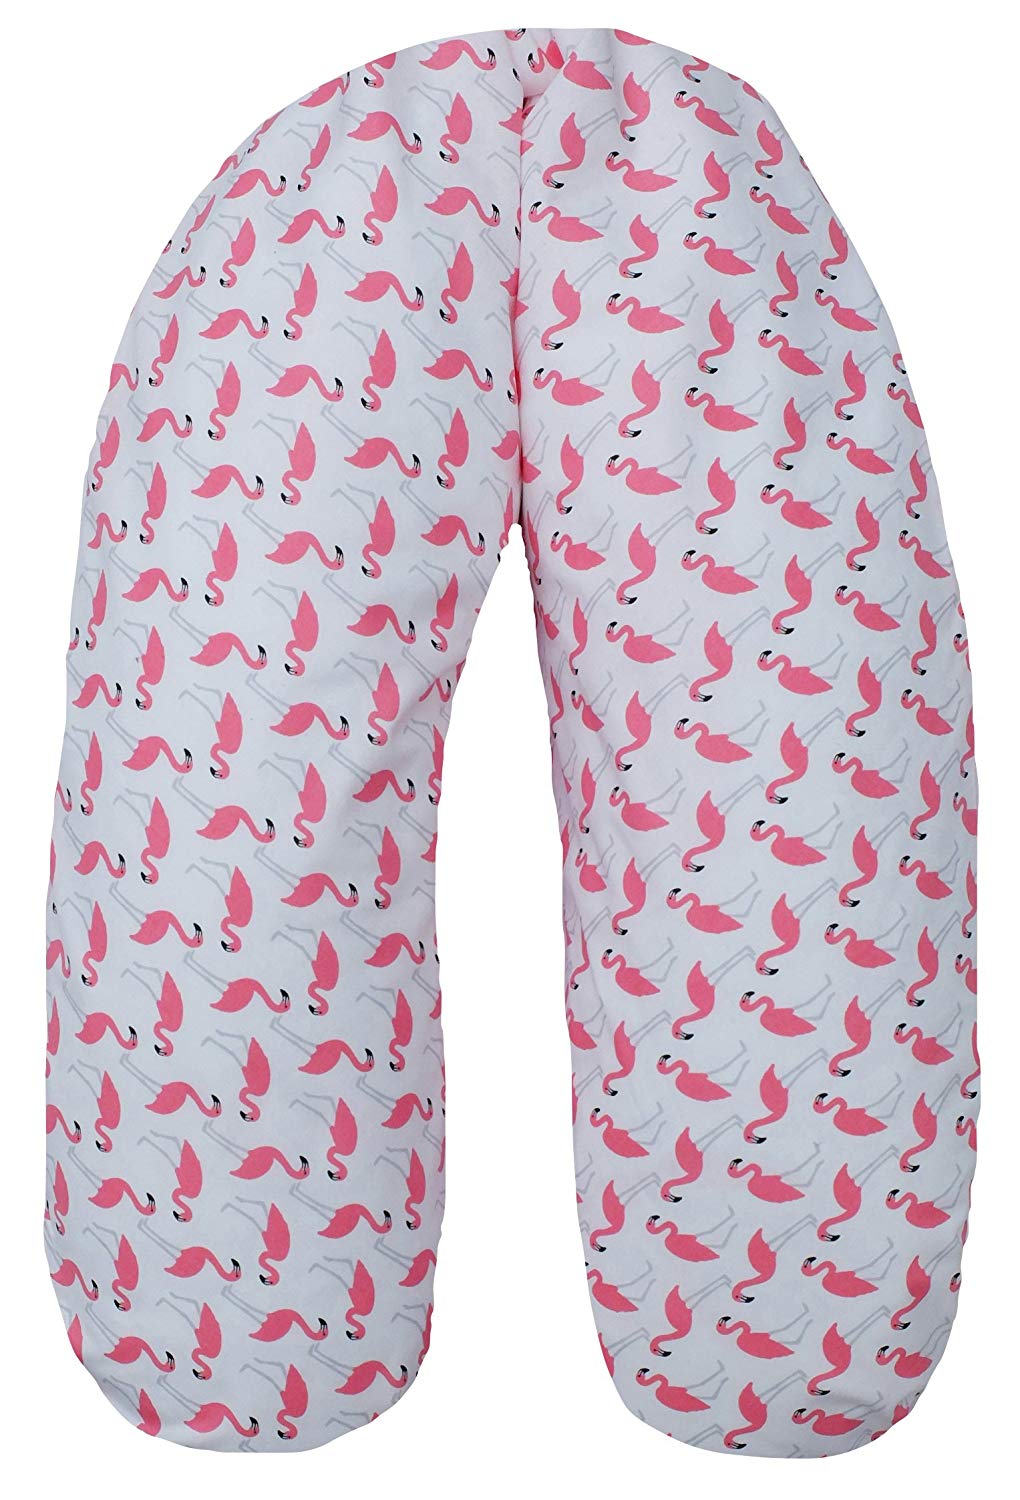 Ideenreich 2368, 130 x 34 cm – Flamingo Pink